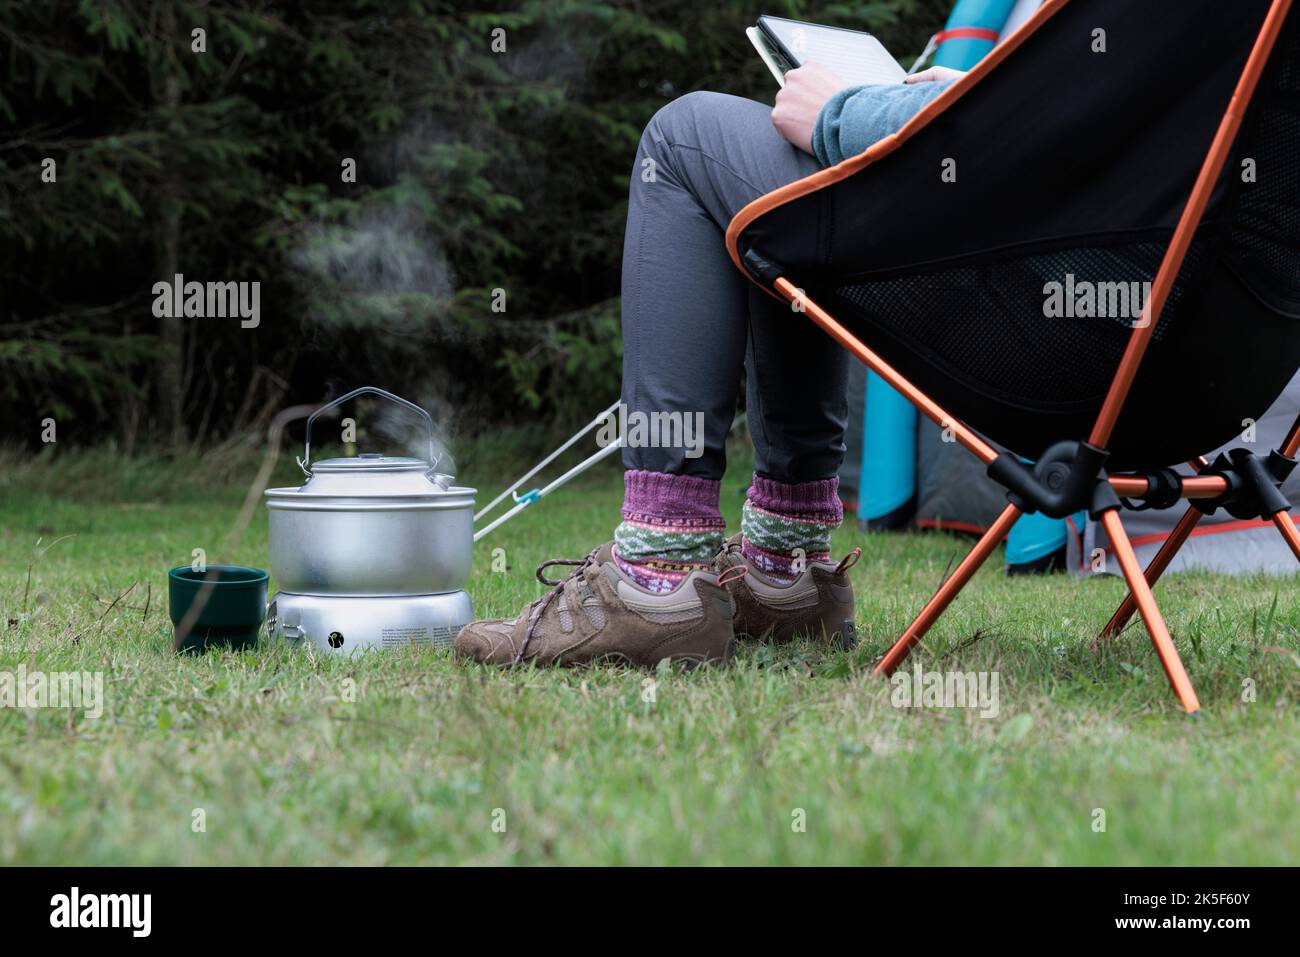 Frau liest und kocht einen Wasserkocher auf einem Campingkocher. Stockfoto